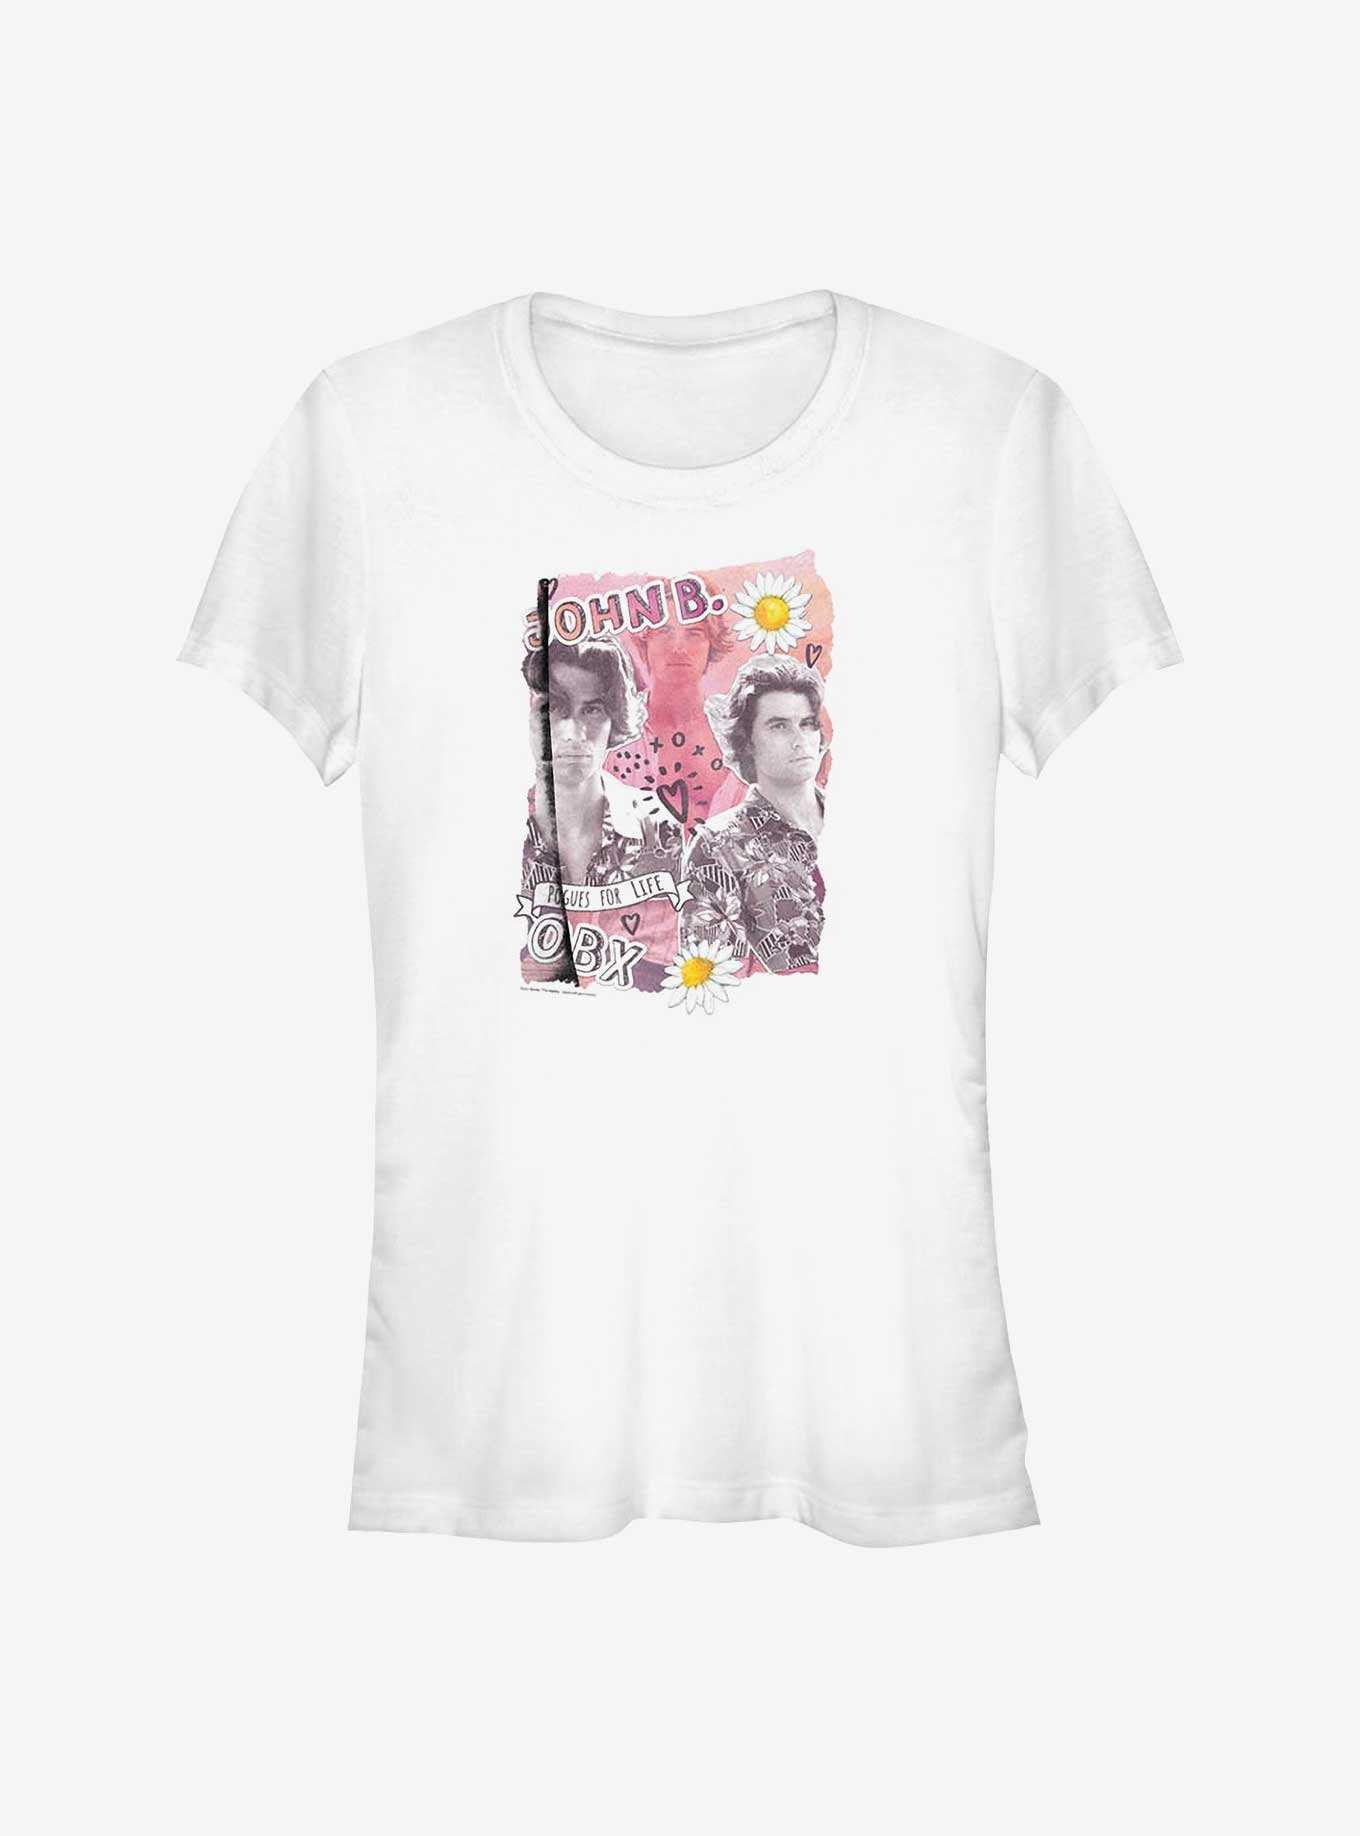 Outer Banks John B. Collage Girls T-Shirt, , hi-res